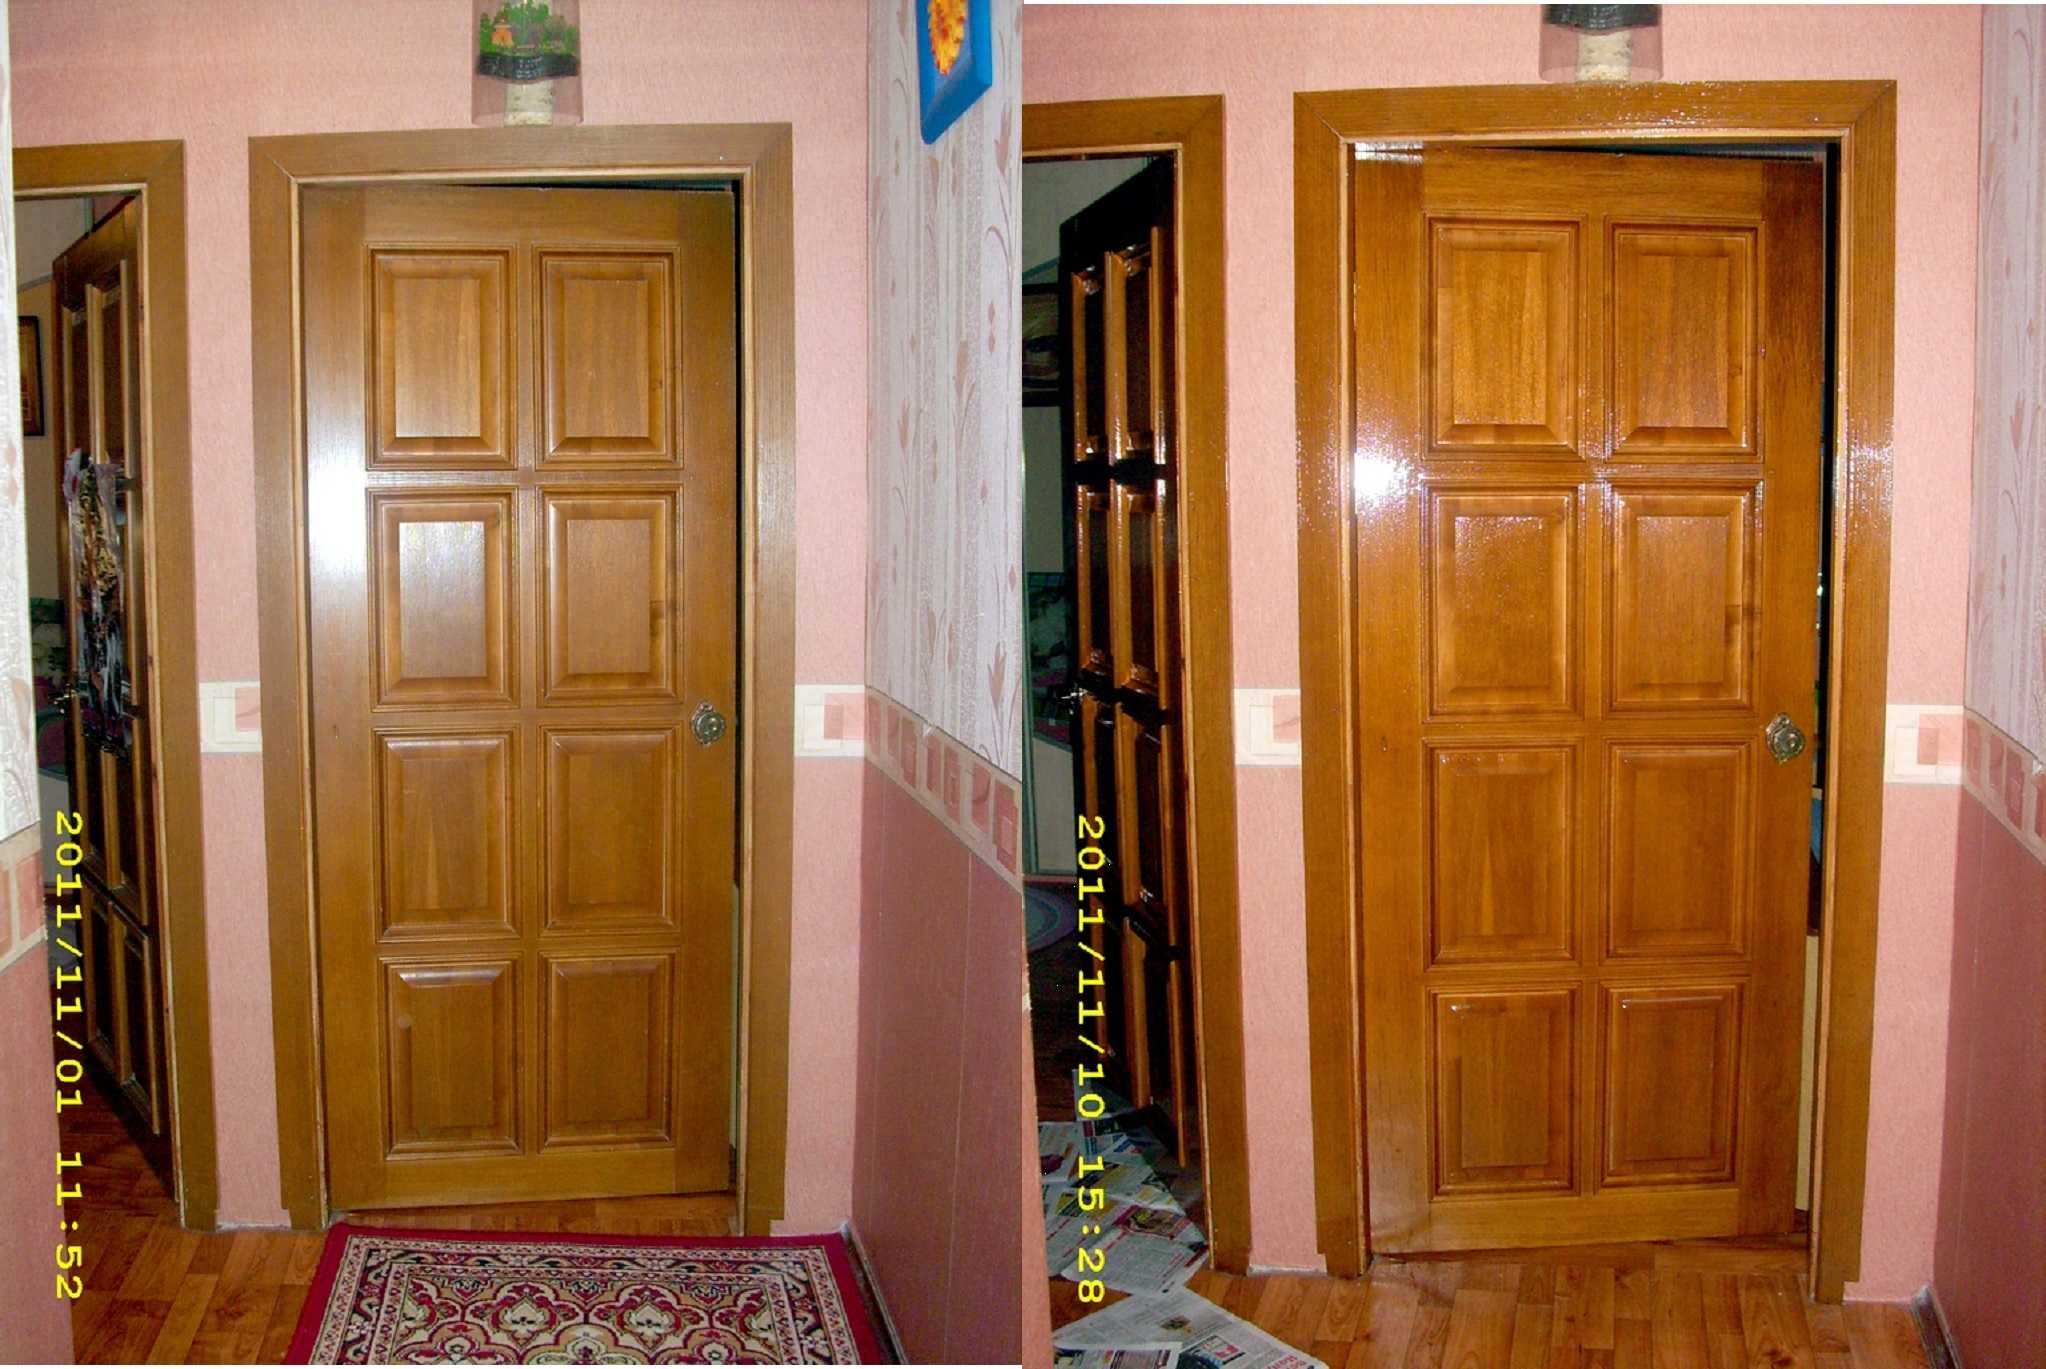 Реставрация шпонированных дверей и варианты покраски дверной конструкции Уход за шпонированной дверью Проблемы с полотном и их решение